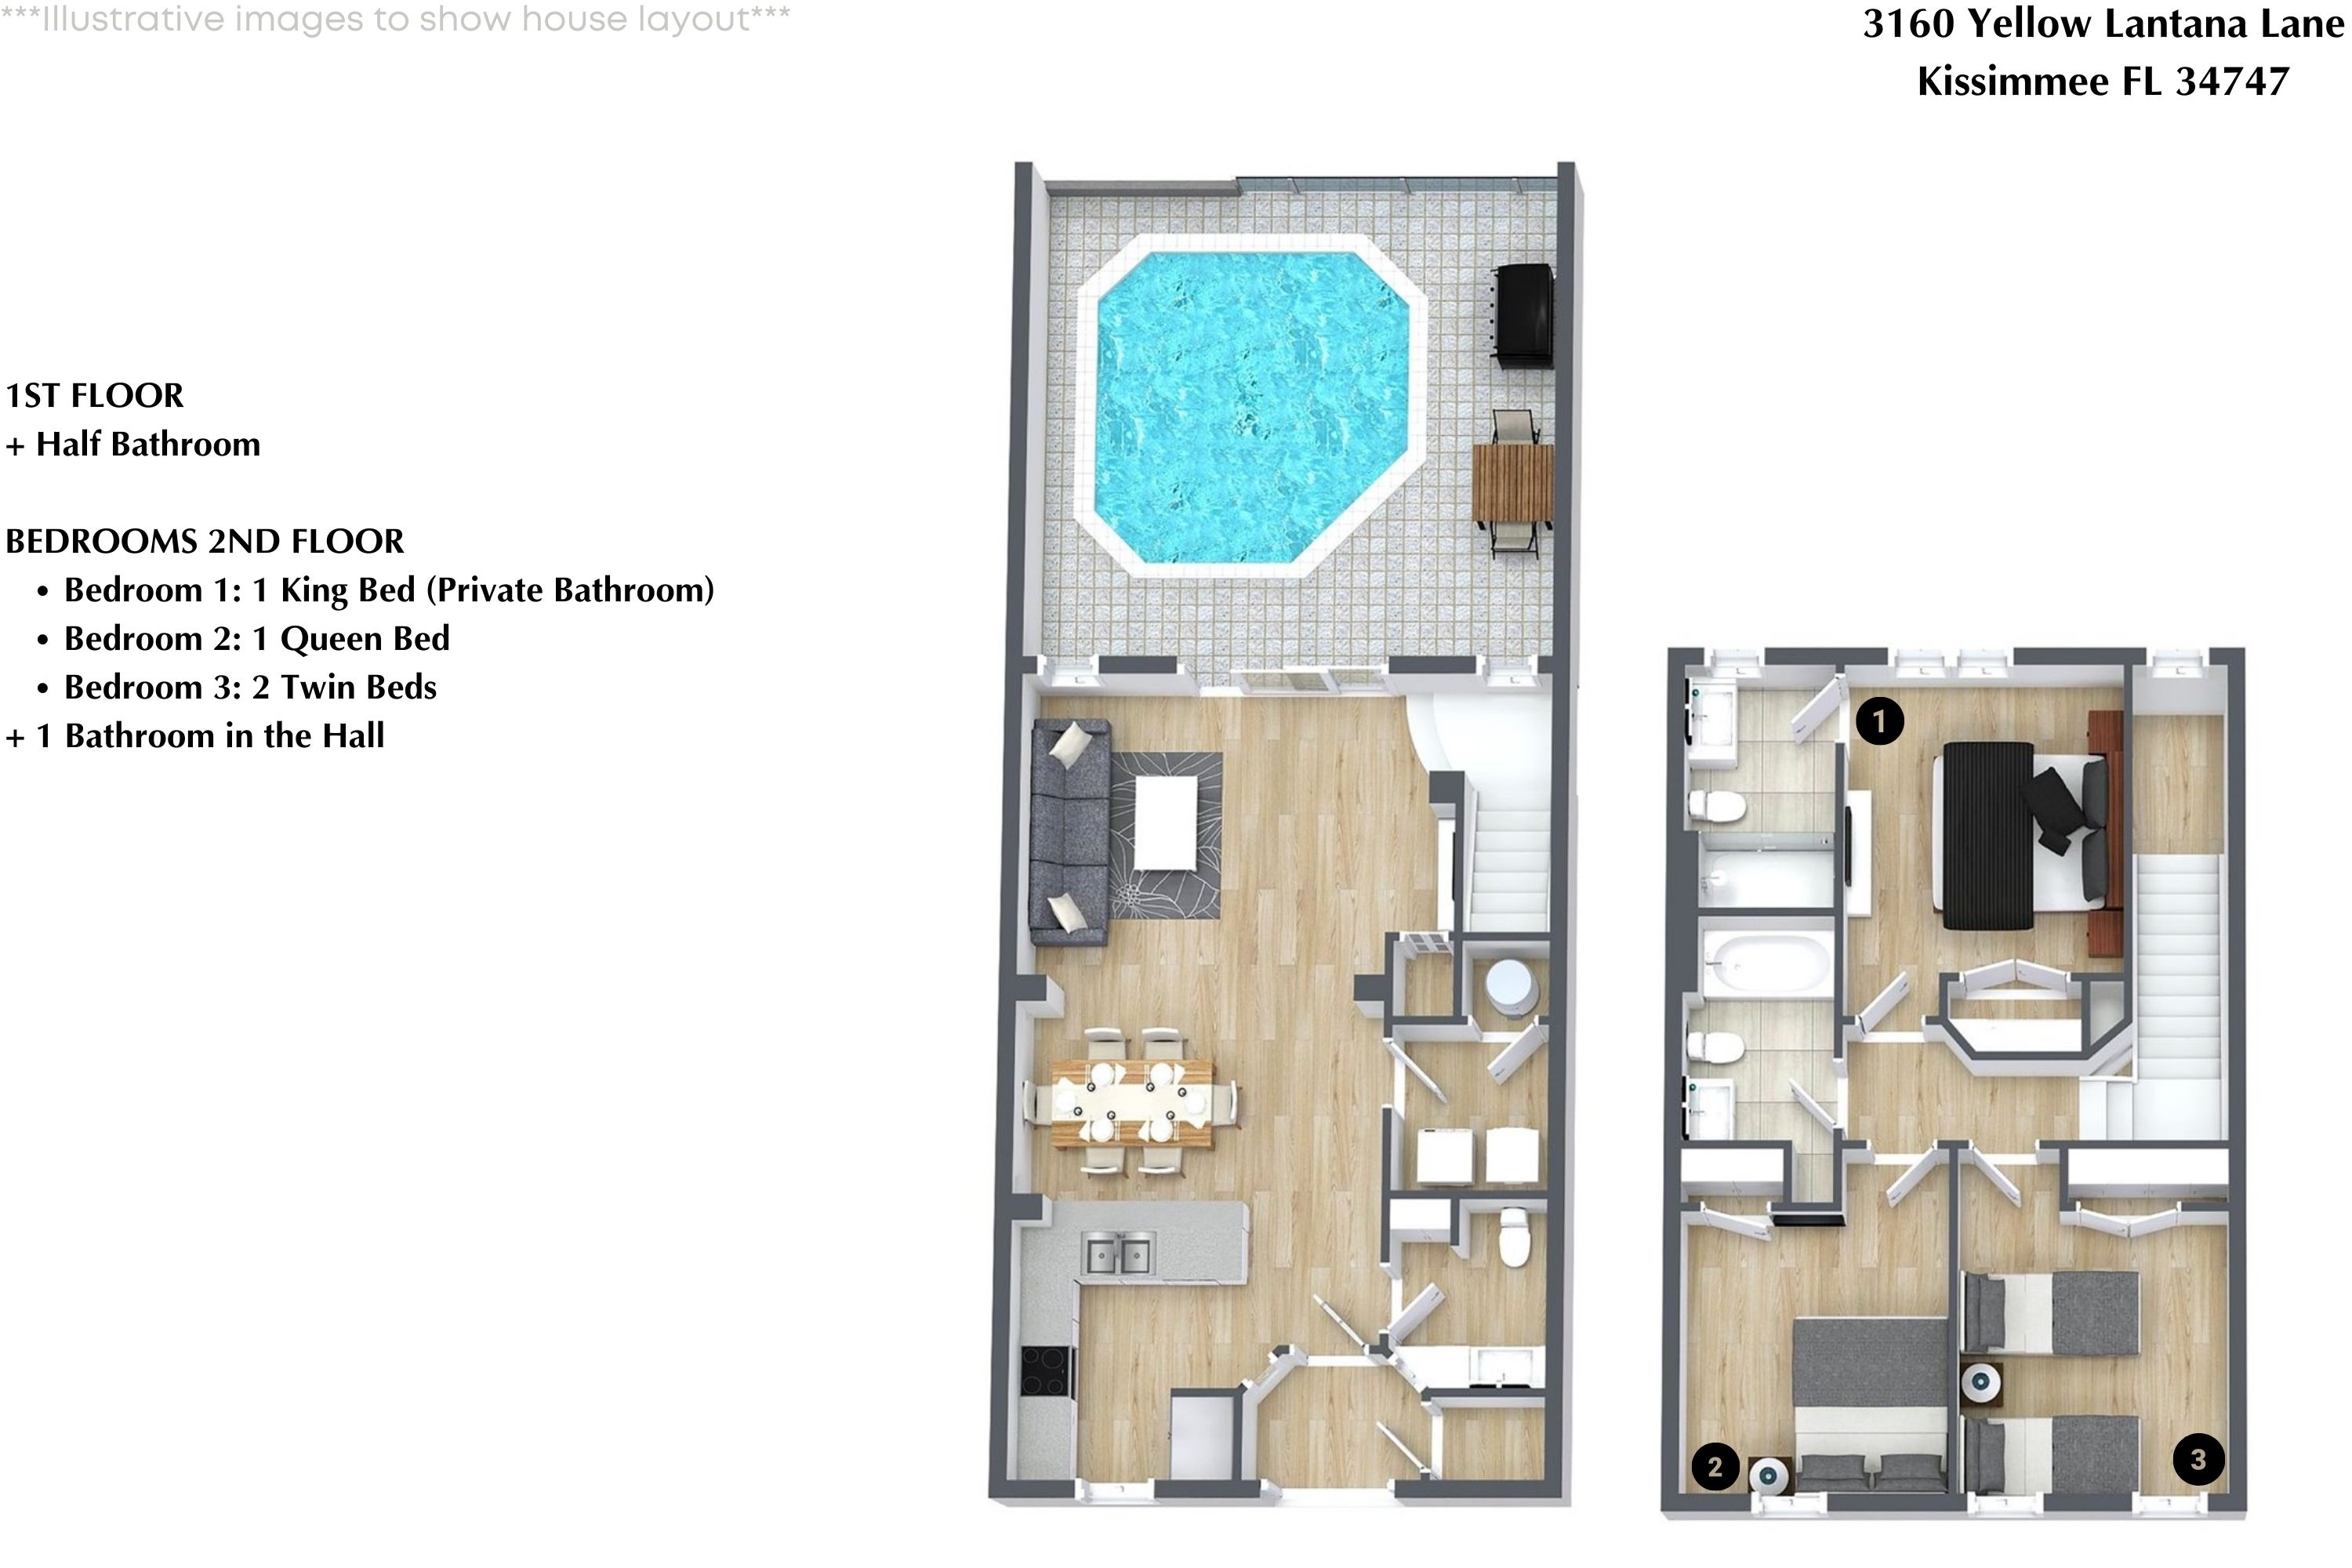 Property Image 2 - 3 Bedroom/ 3 Bathroom Encantada Resort (3160 YL)